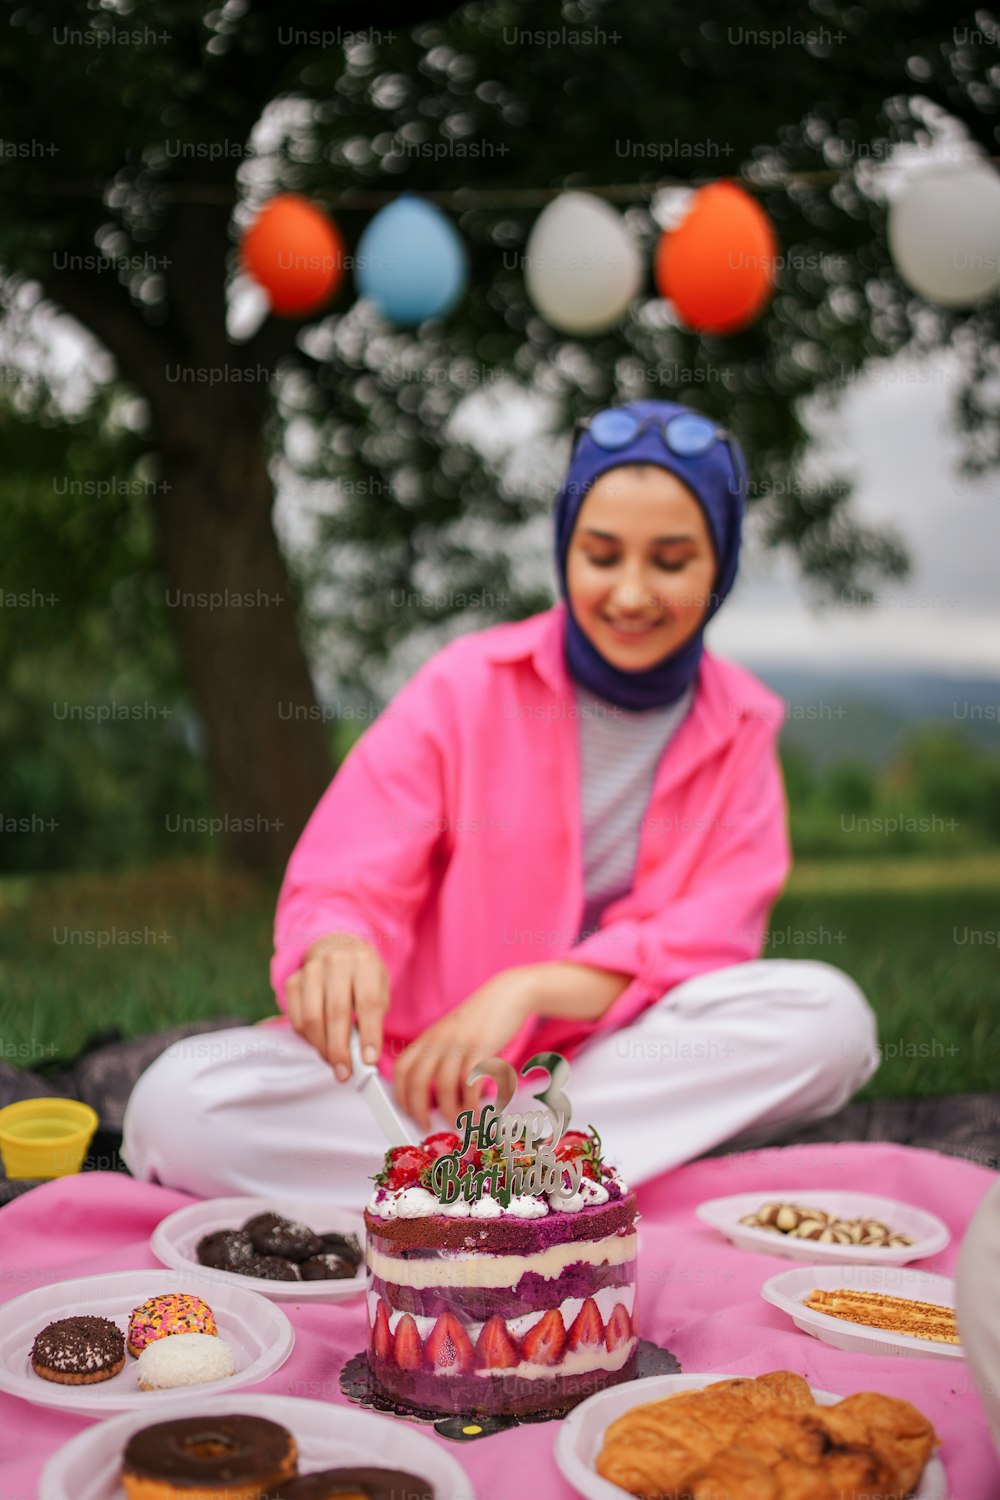 Une femme assise par terre en train de couper un gâteau